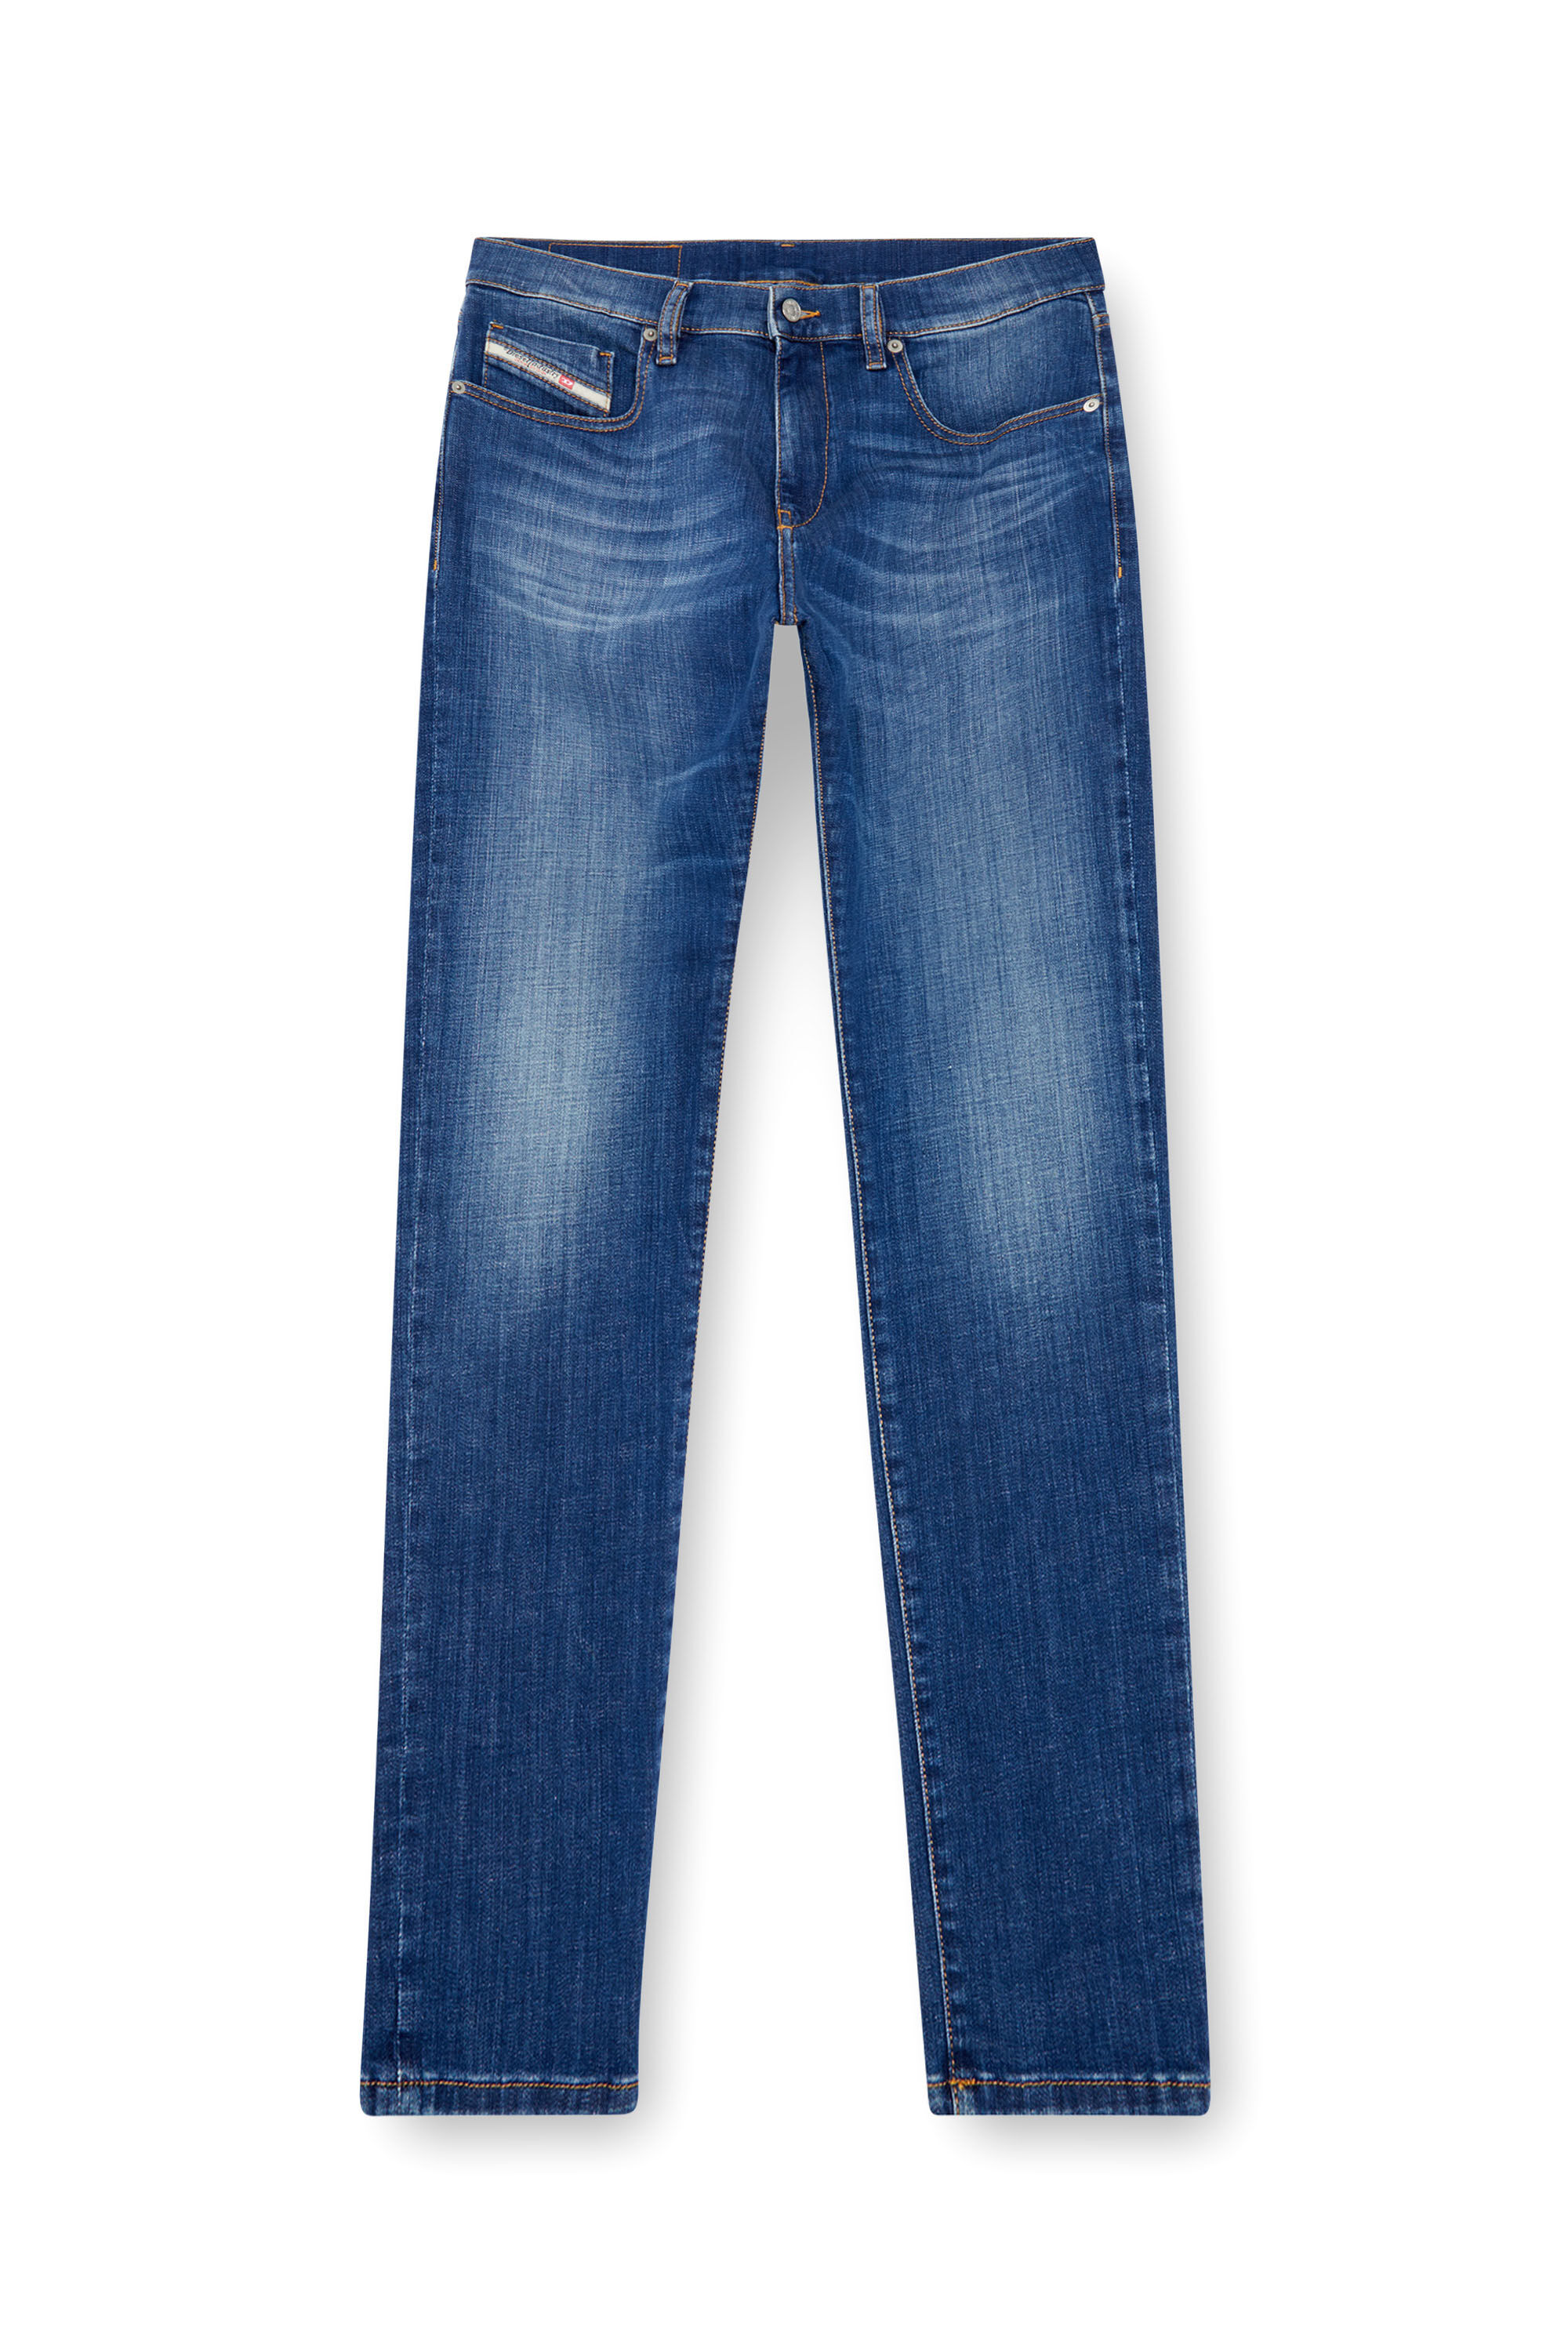 Diesel - Slim Jeans 2019 D-Strukt 09K04, Hombre Slim Jeans - 2019 D-Strukt in Azul marino - Image 2